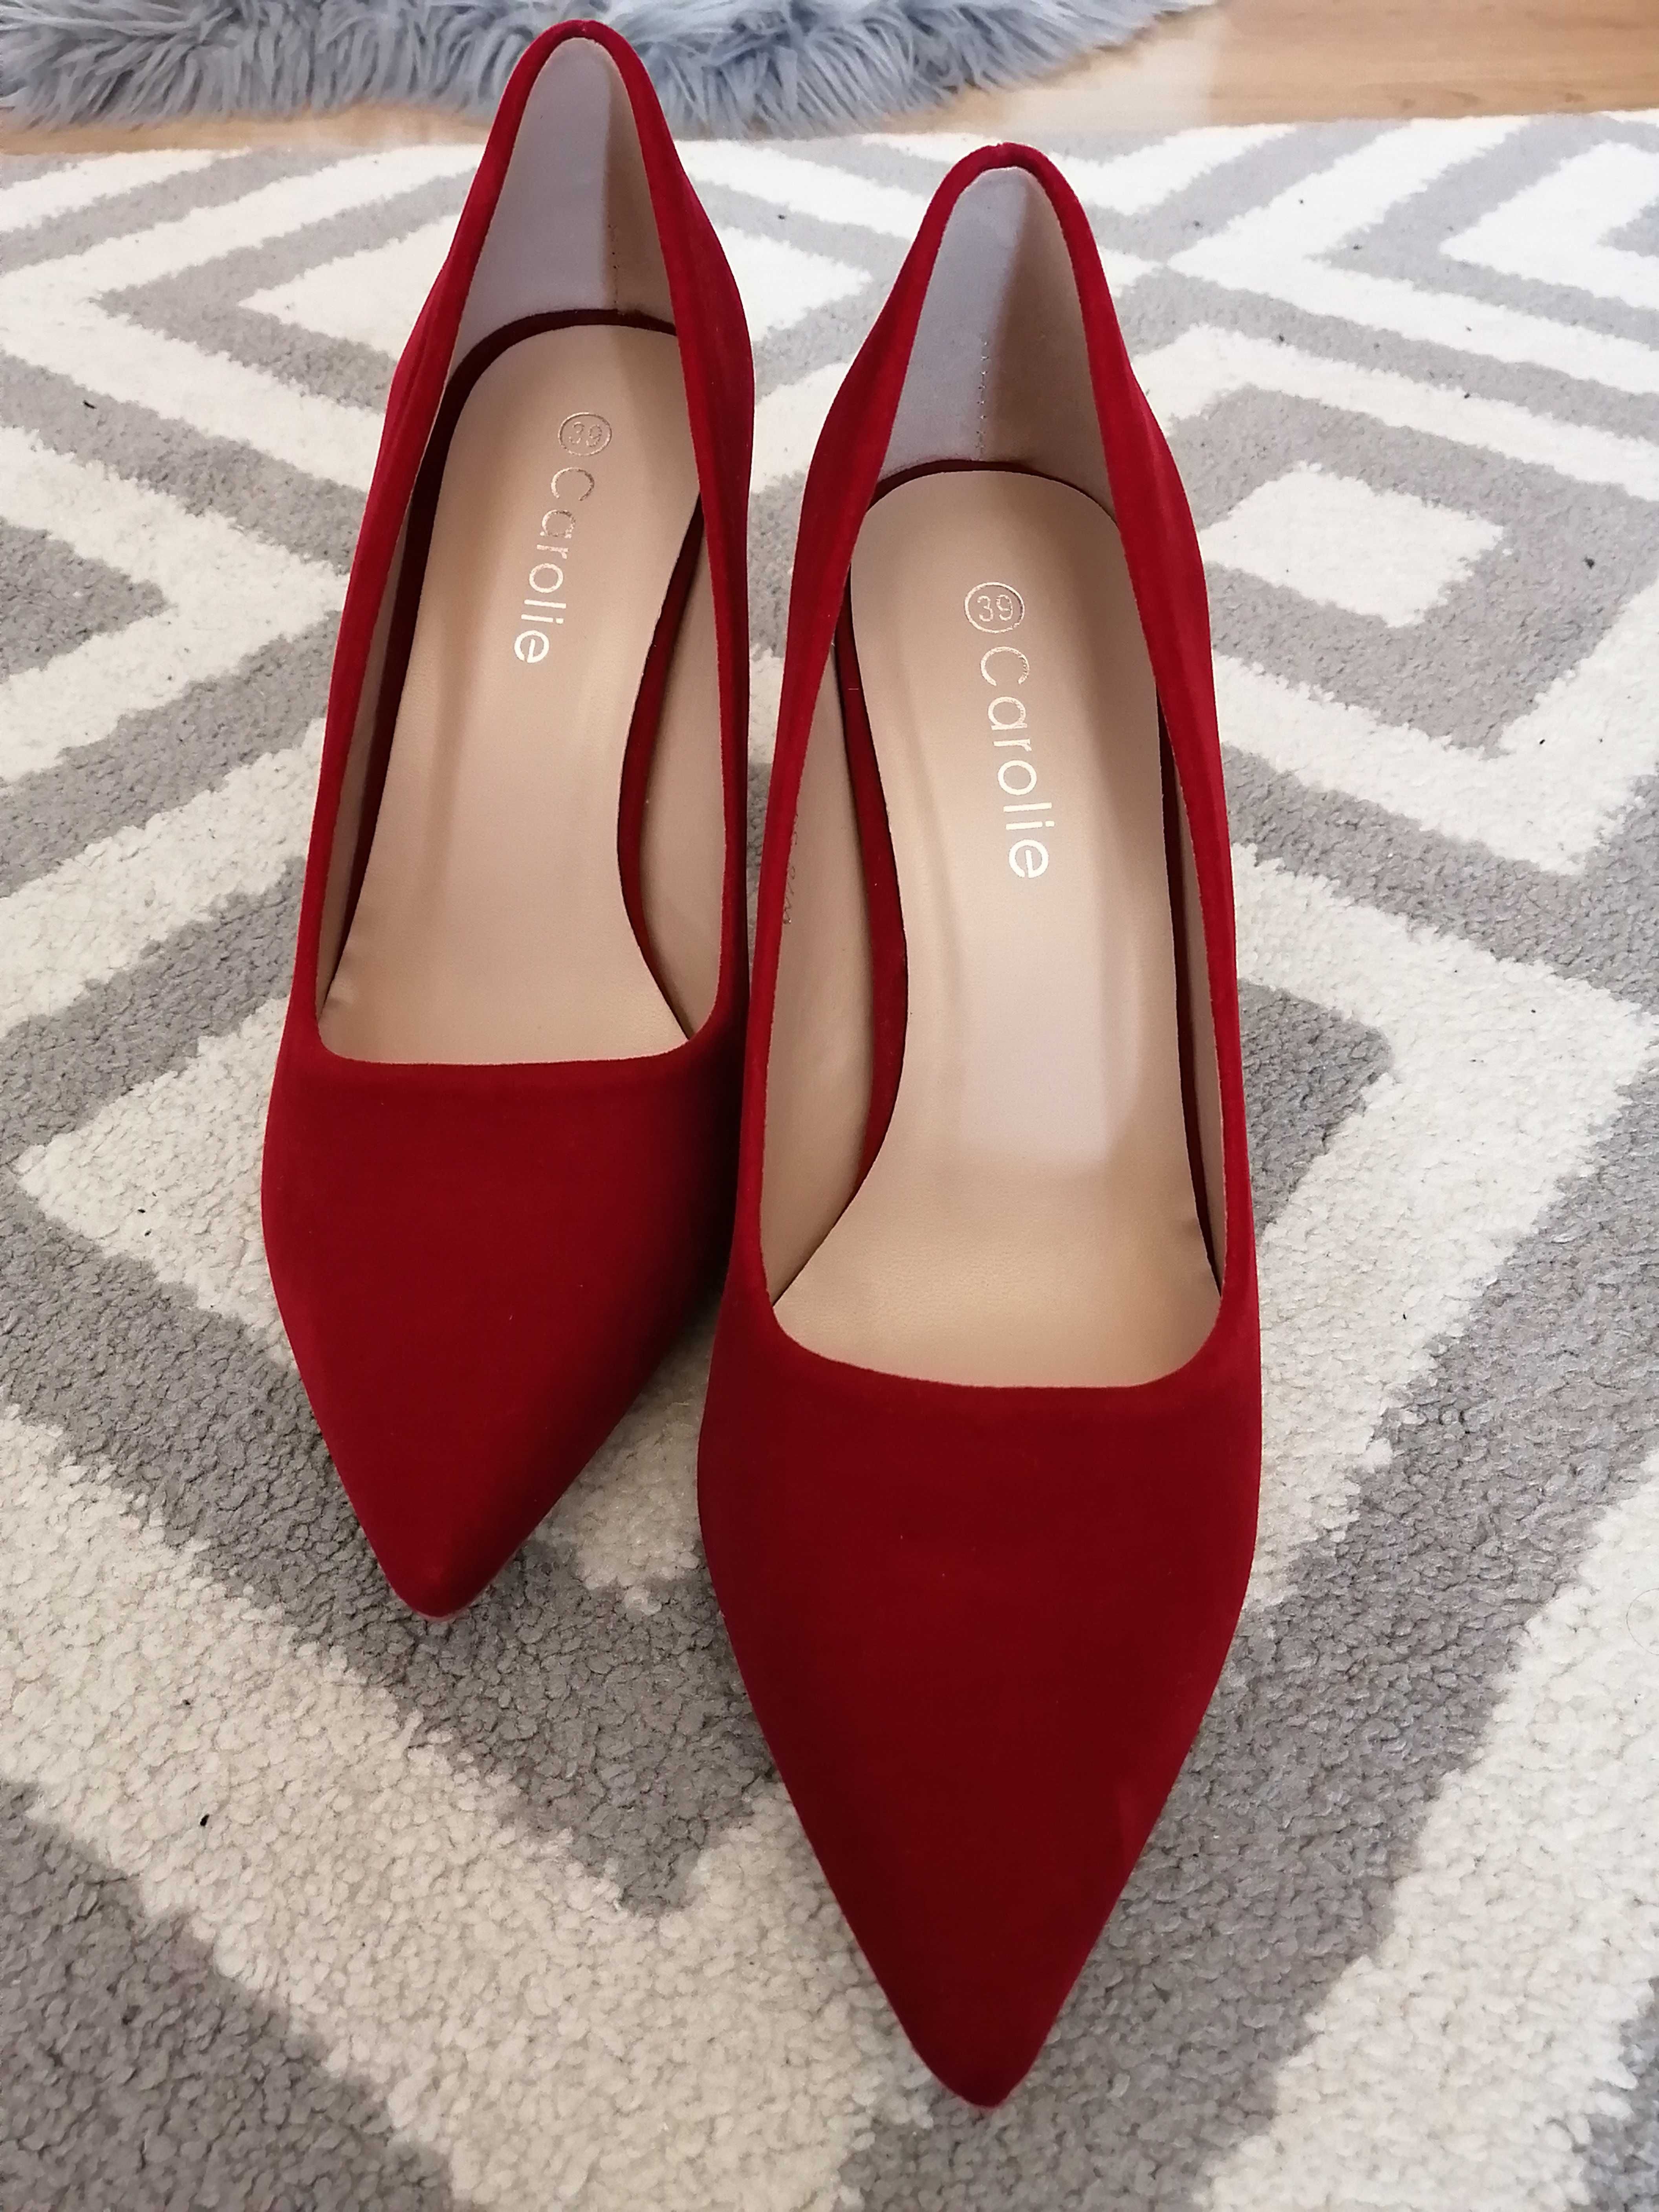 Pantofi roșii cu toc nr 39